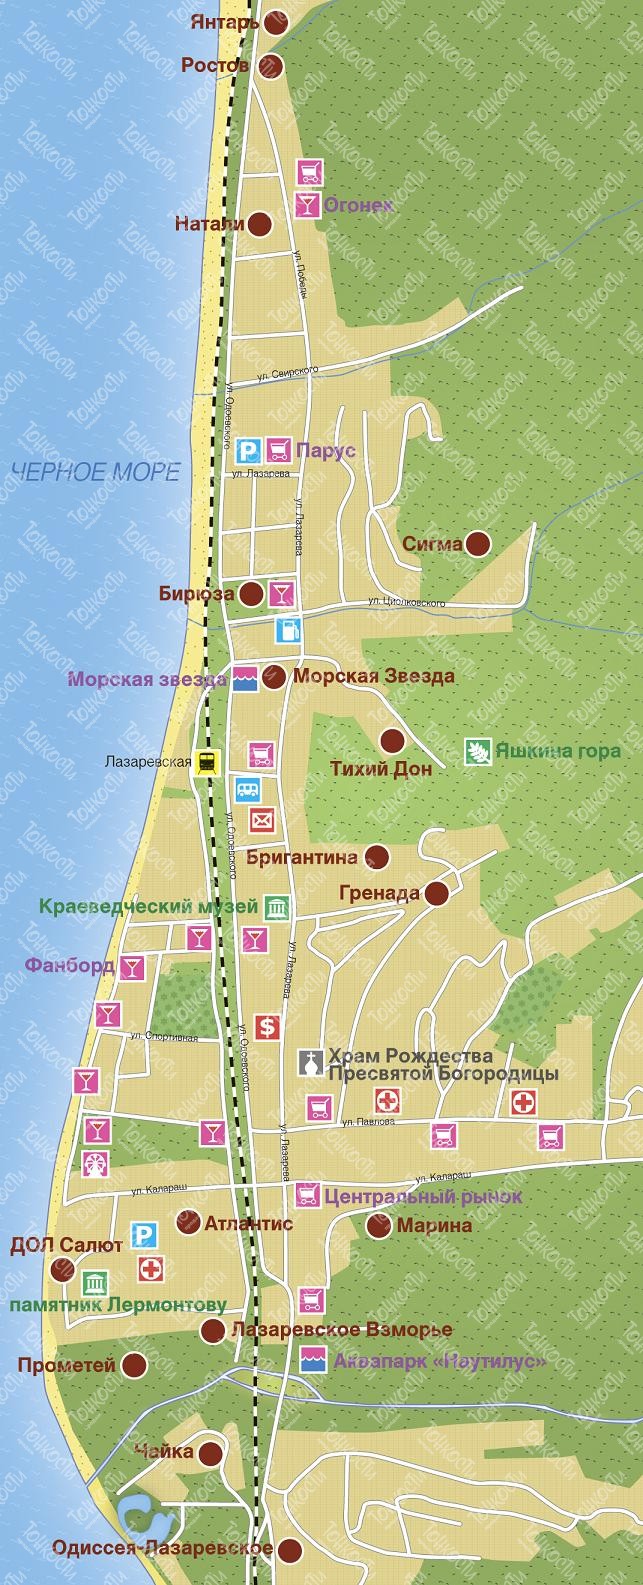 Карта Лазаревского — подробная карта отелей, пляжей и туристическихобъектов Лазаревского (Россия) на русском